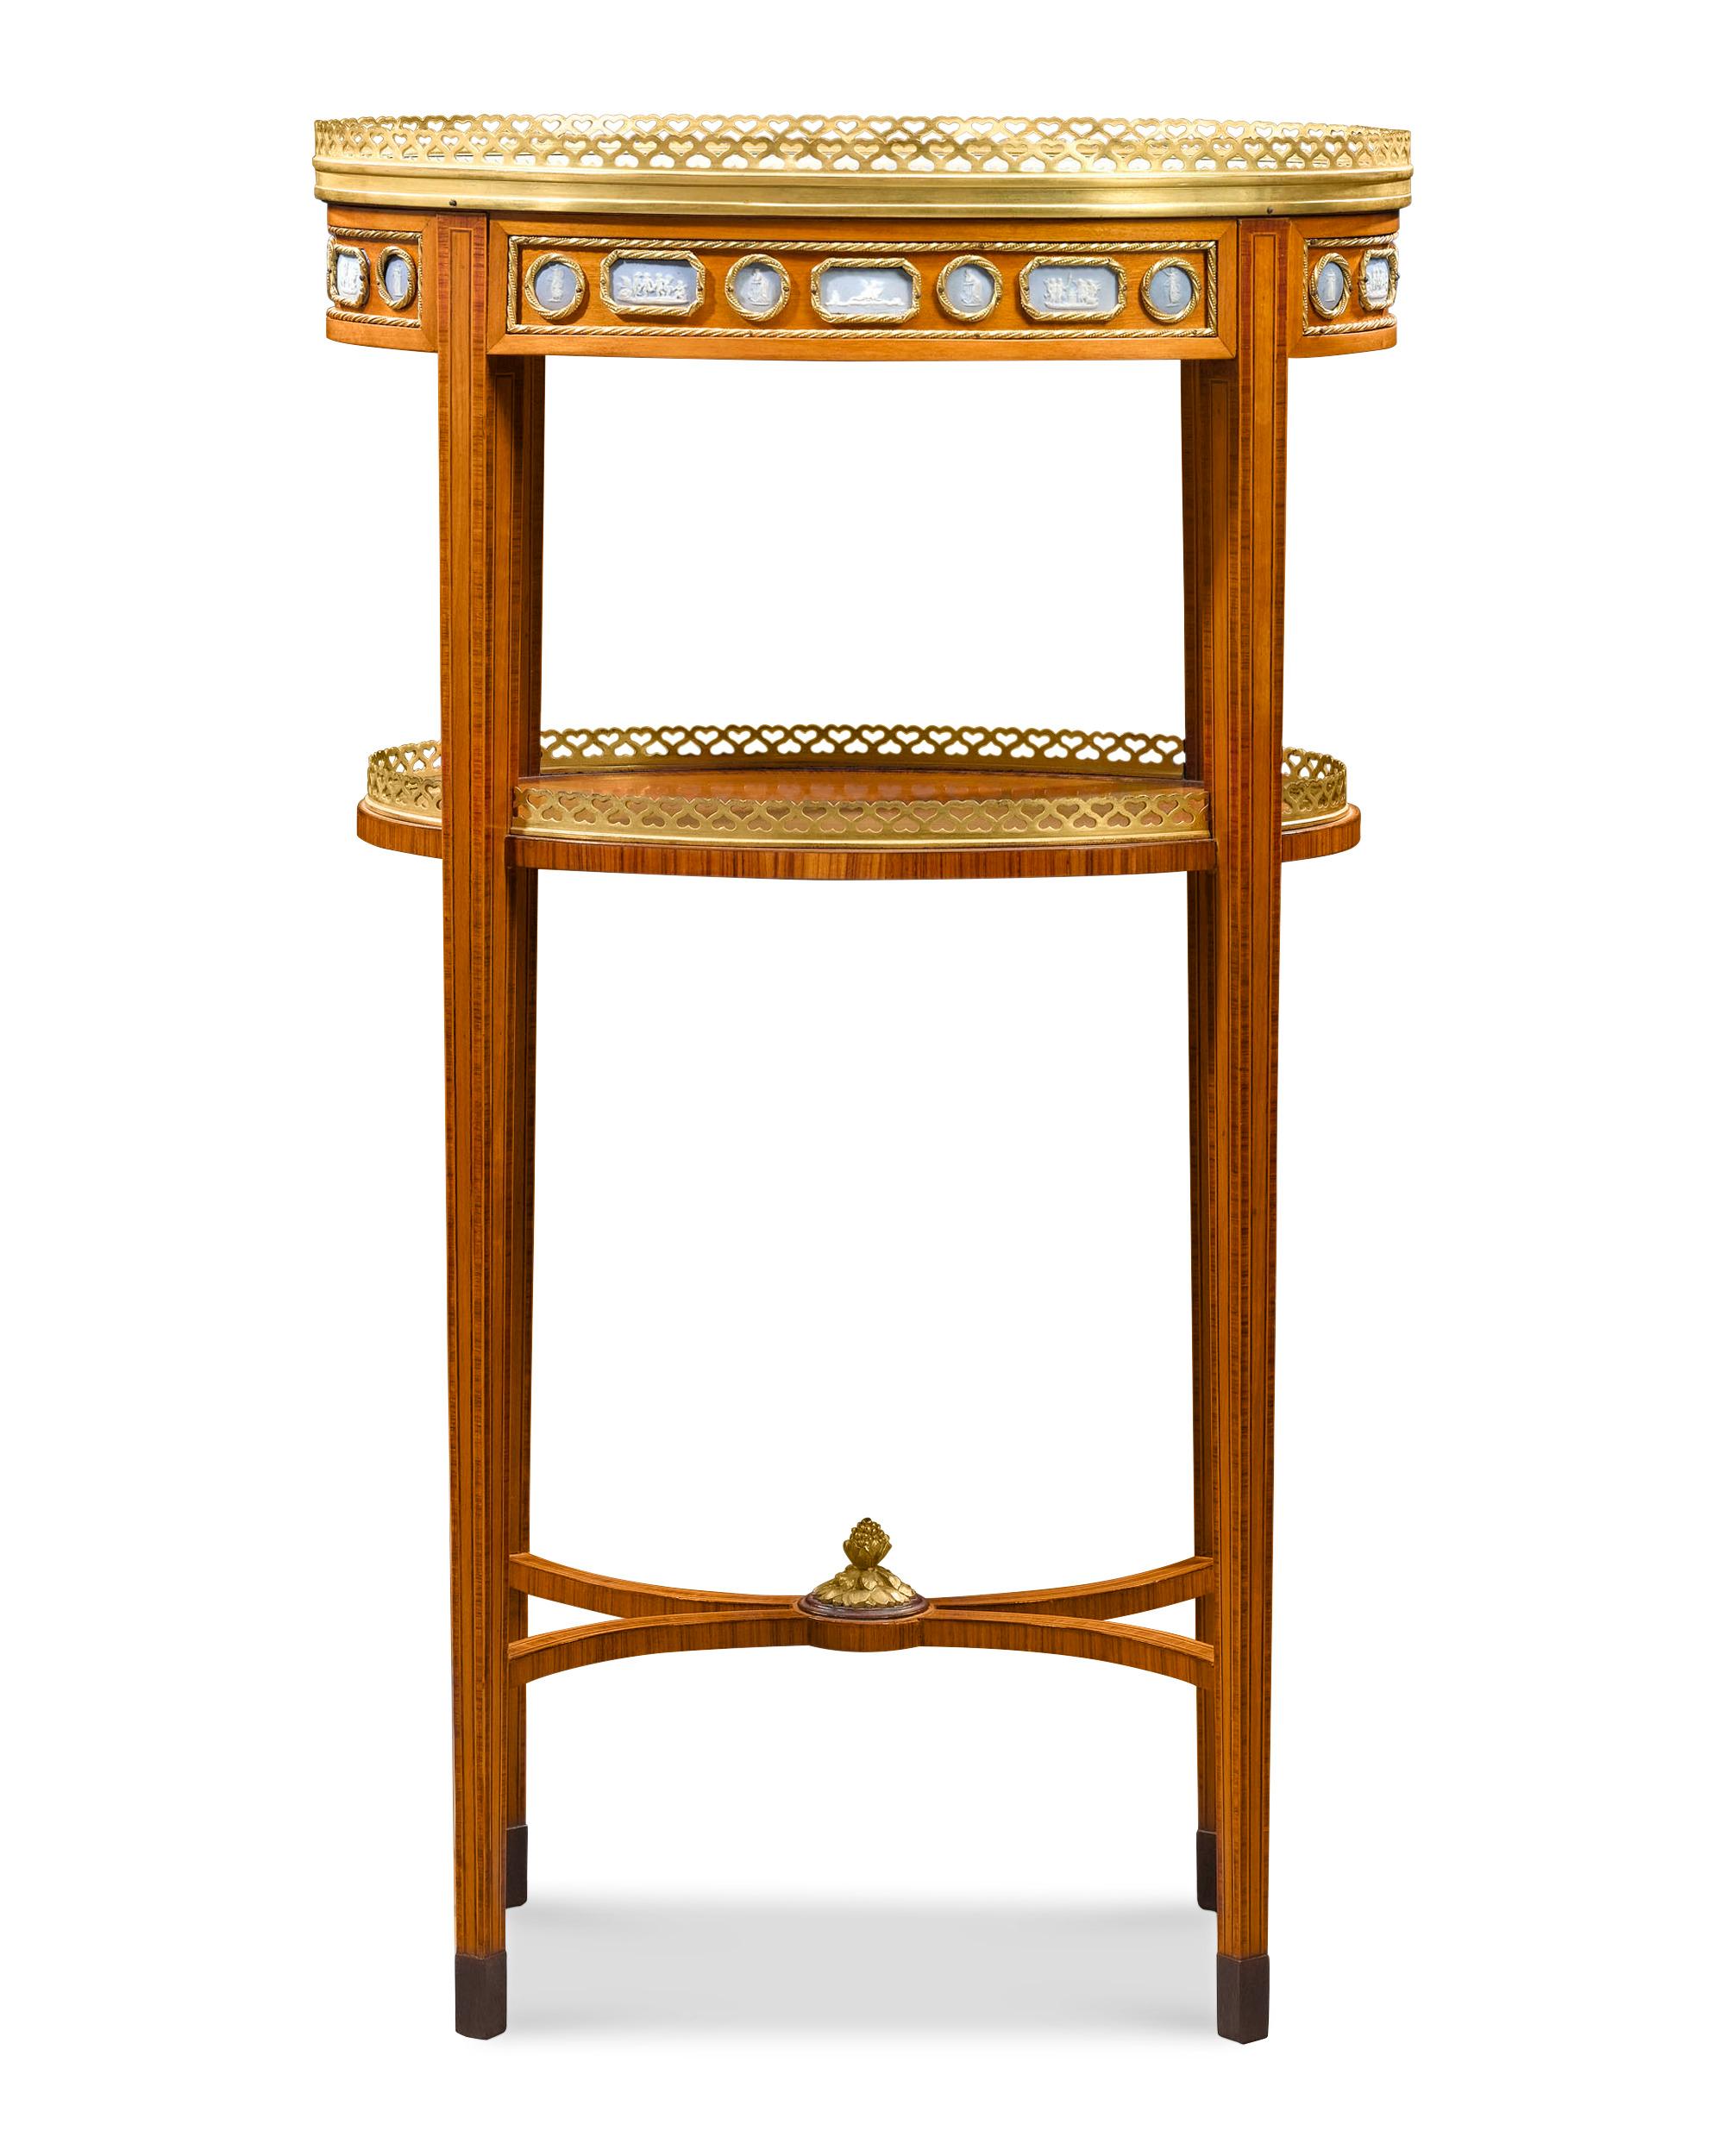 L'artisanat exquis de François Linke est associé à l'élégance de Wedgwood dans cette remarquable table d'appoint. Très similaire à l'un des modèles les plus demandés lors de l'Exposition universelle de 1904 à St. Louis, cette pièce exceptionnelle